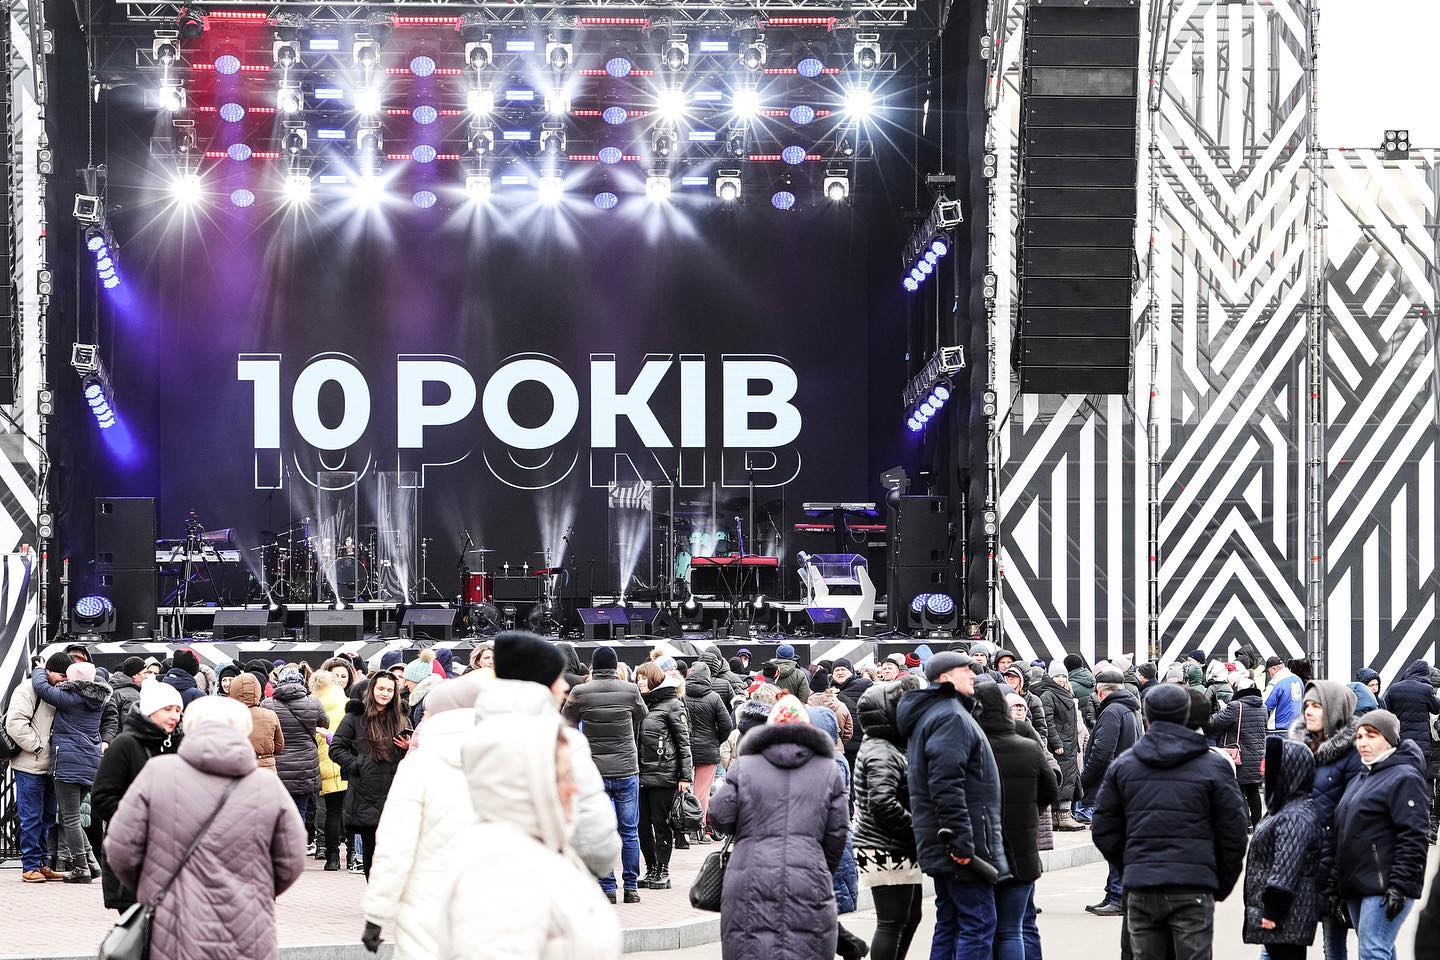 На святкування 10-річчя ФК “Колос” приїхали з концертом Вінник, Полякова та DZIDZIO (фоторепортаж)